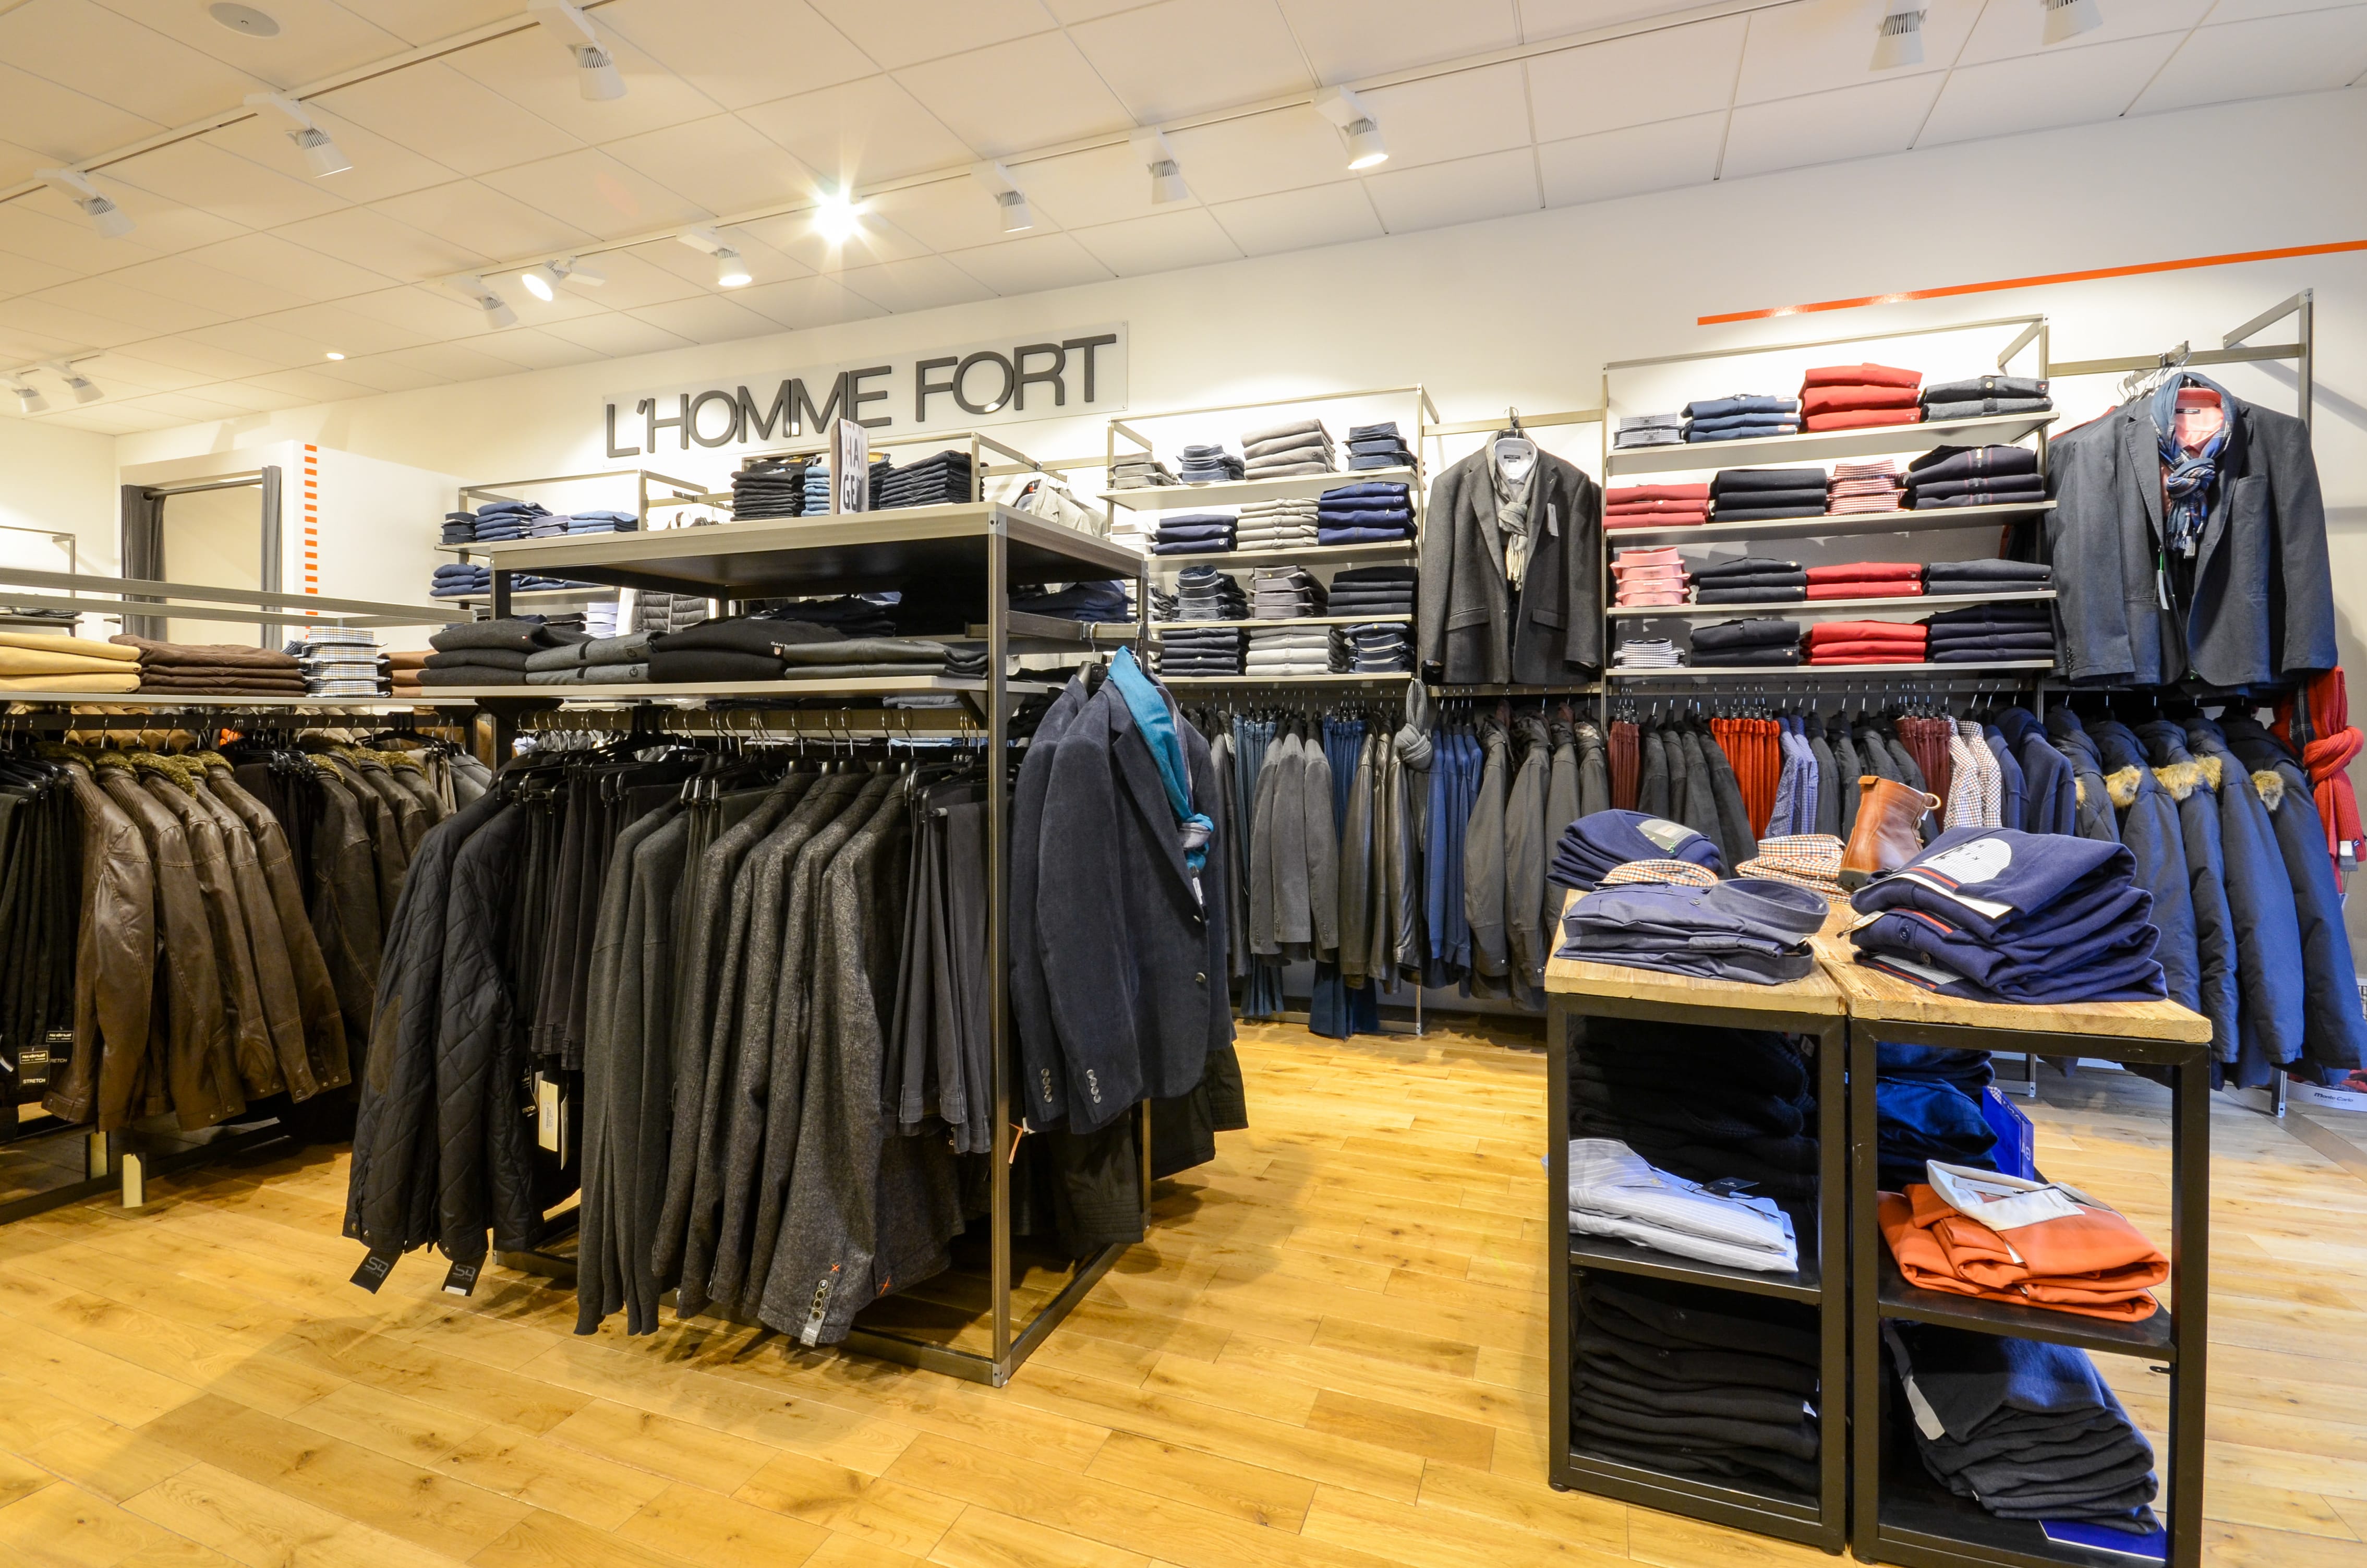 Size-Factory vêtement Homme grande taille Lille - Boutique de vêtements à  Wasquehal (59290) - Adresse et téléphone sur l'annuaire Hoodspot